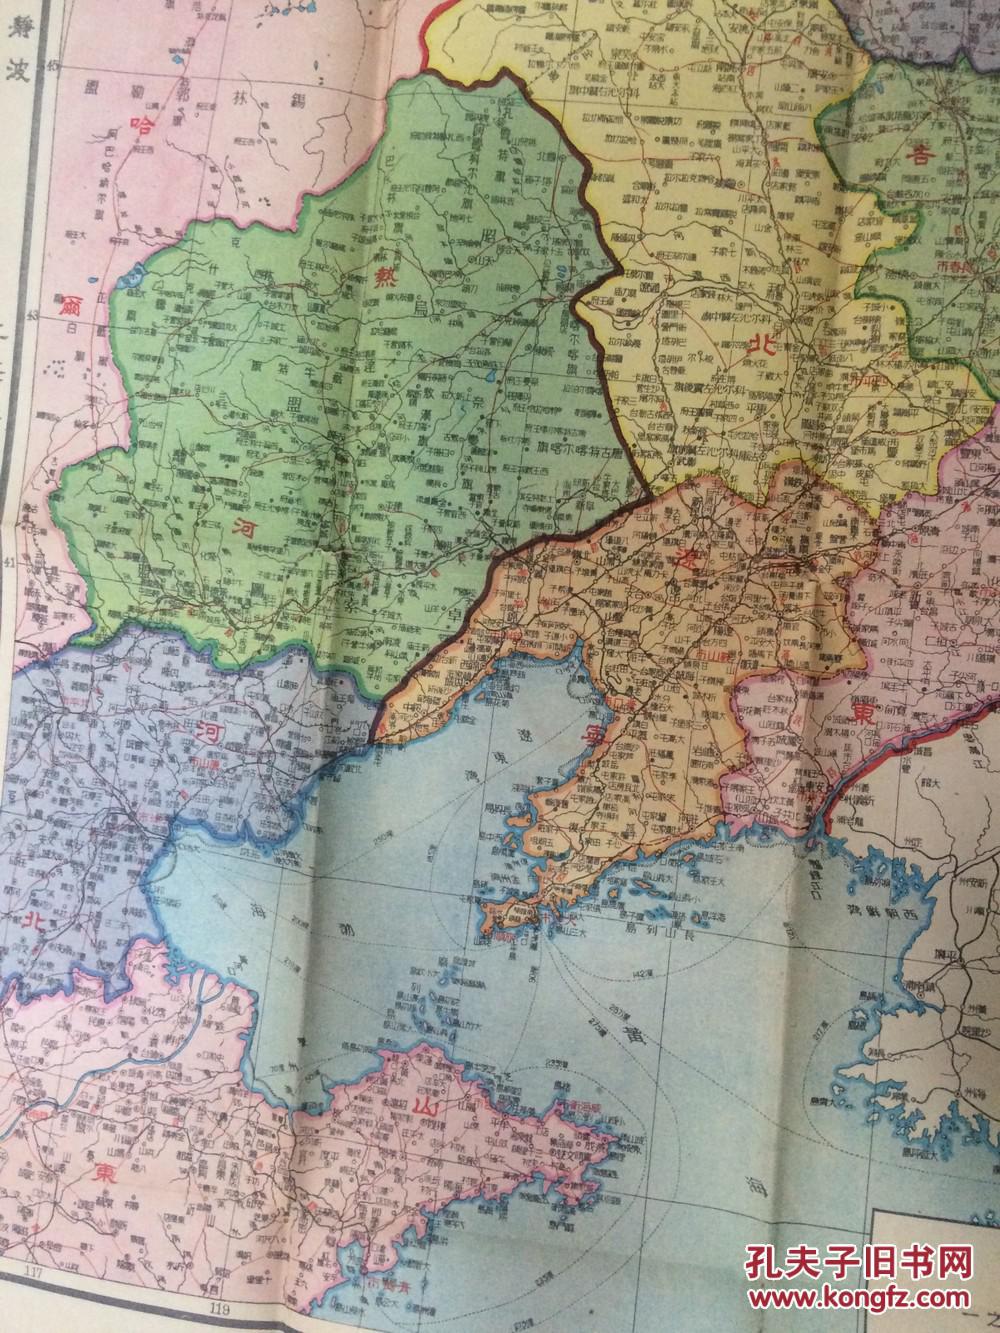 少见民国东北彩色地图:中华民国36年初版(1947年初)彩色《东北九省图片